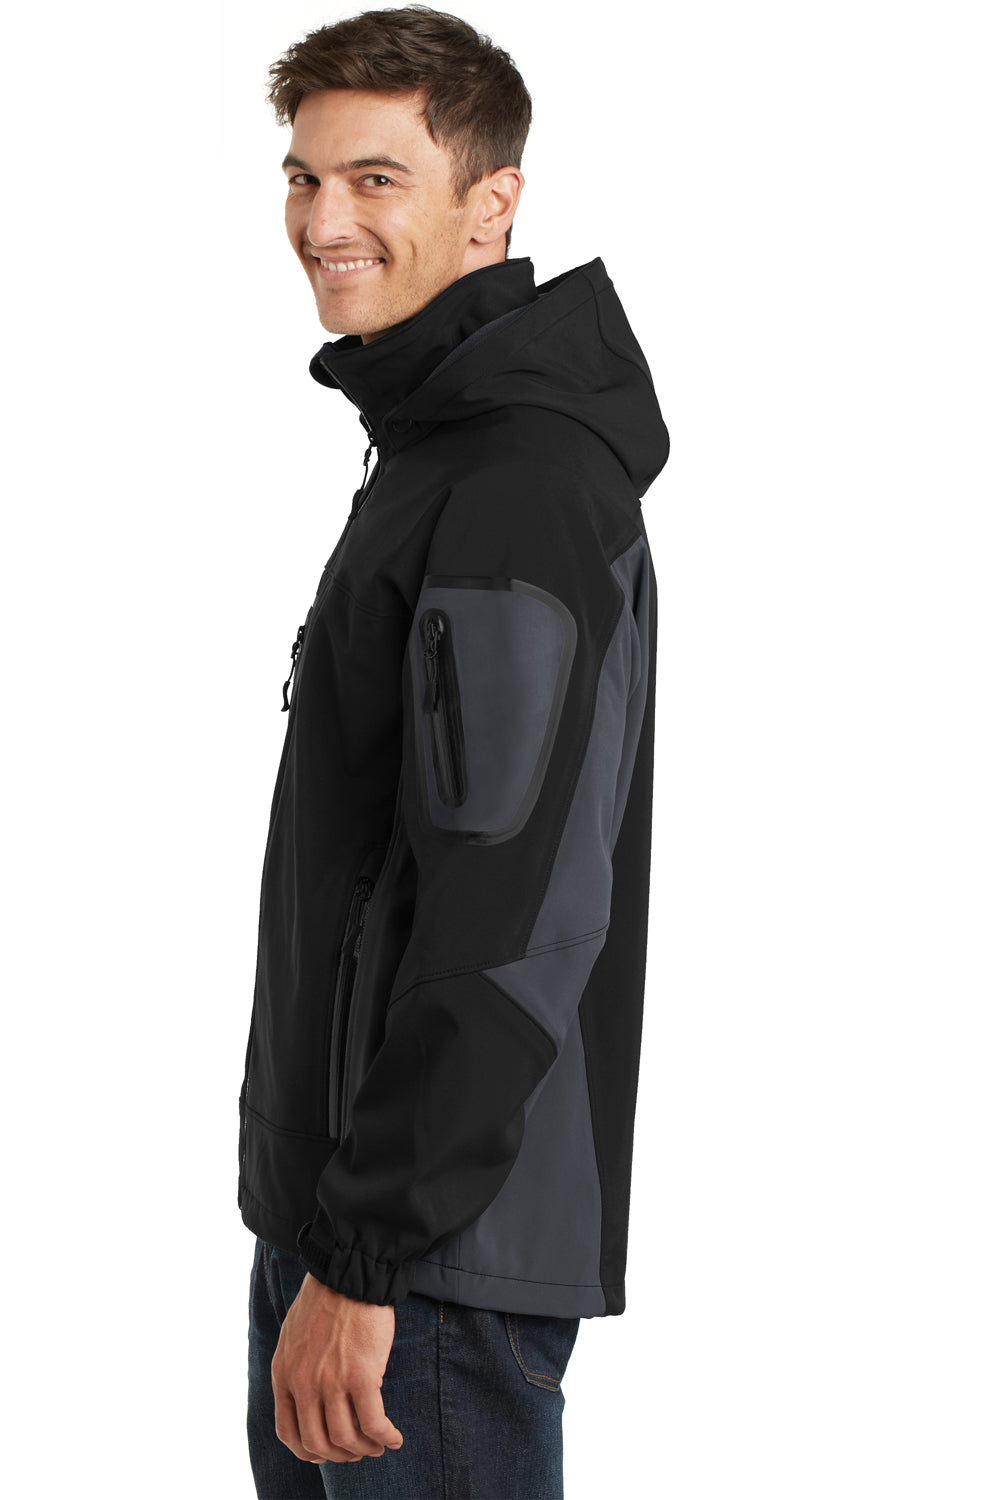 Port Authority J798 Mens Waterproof Full Zip Hooded Jacket Black/Grey Side